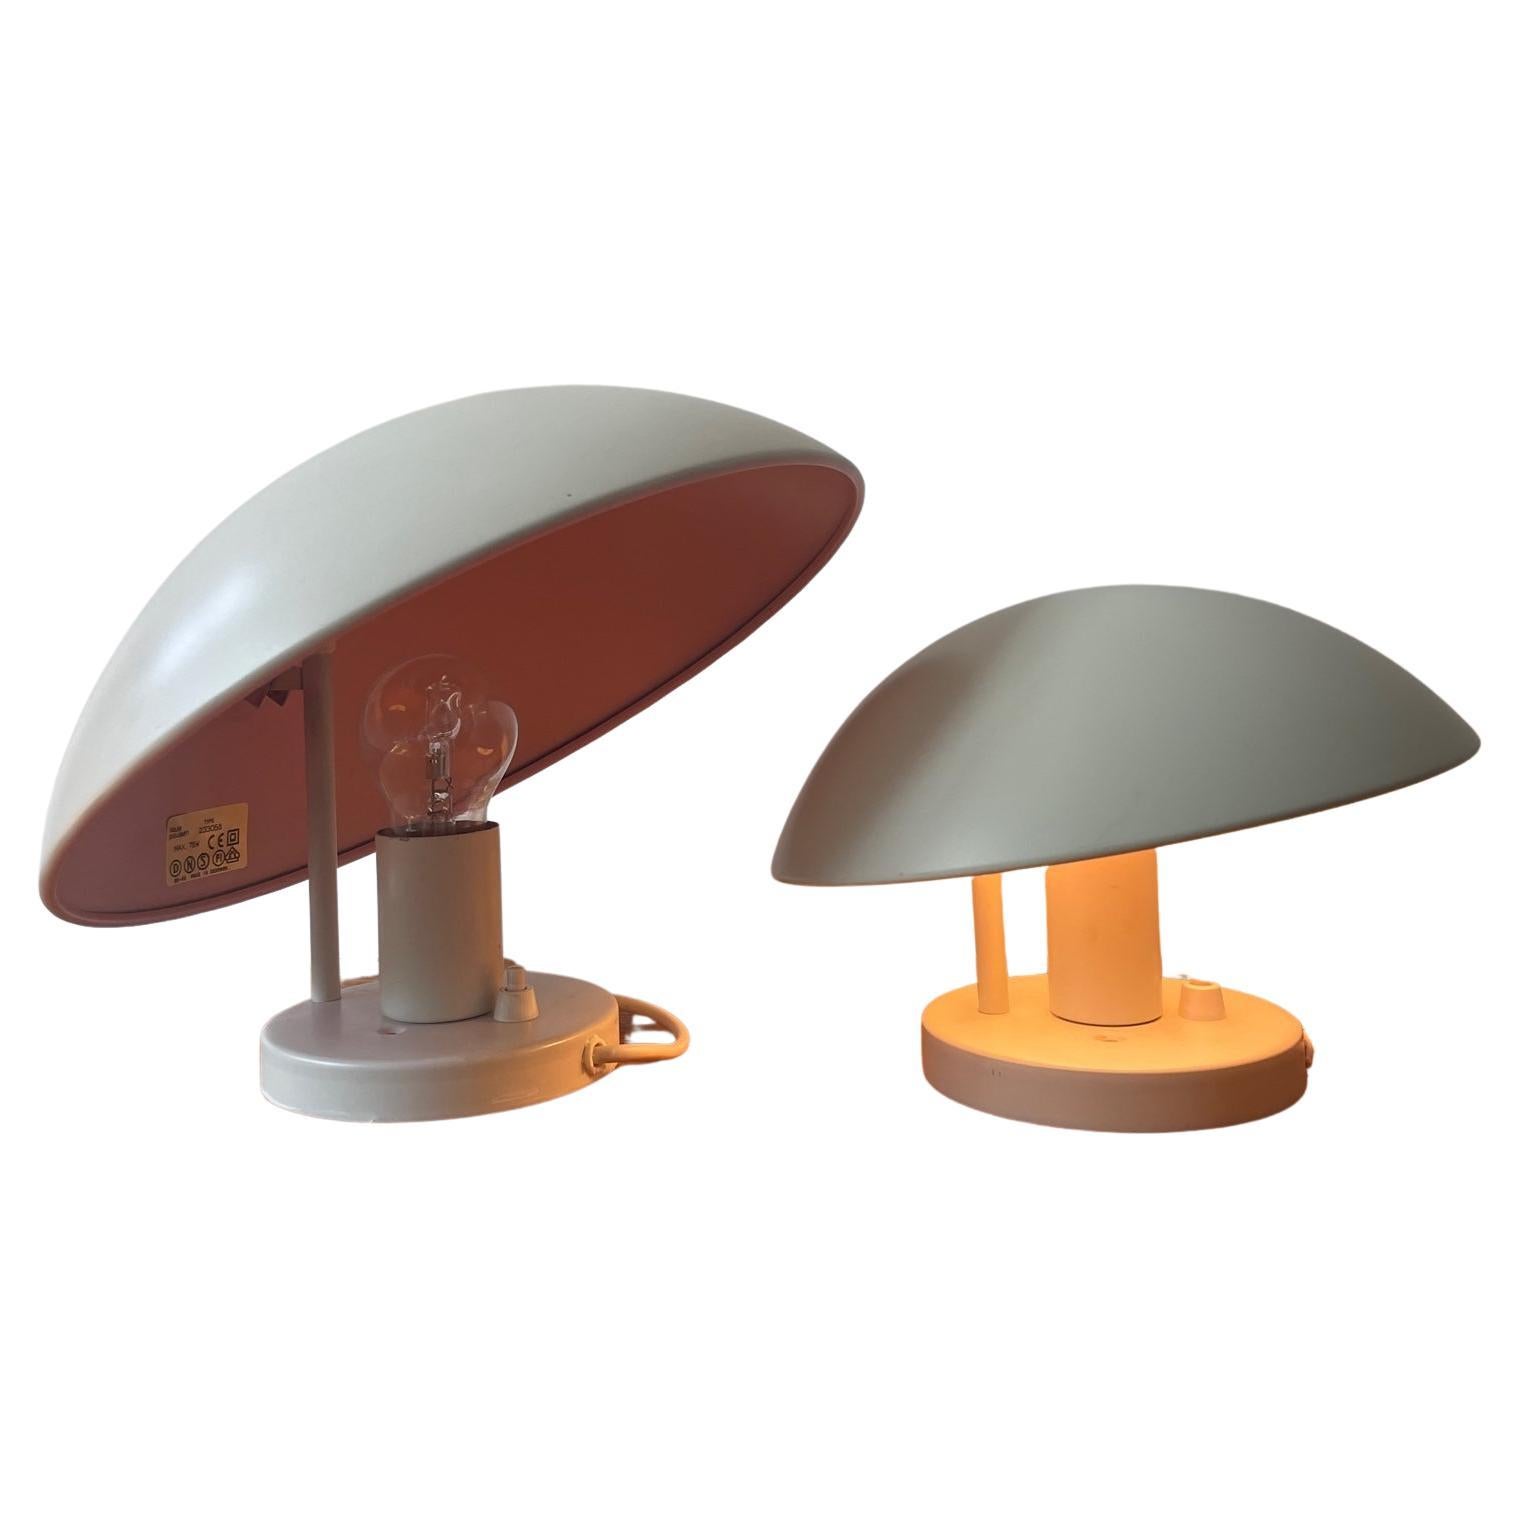 2 Louis Poulsen PH Hat wall lamps. Poul Henningsen lights. Danish design lamps.  For Sale